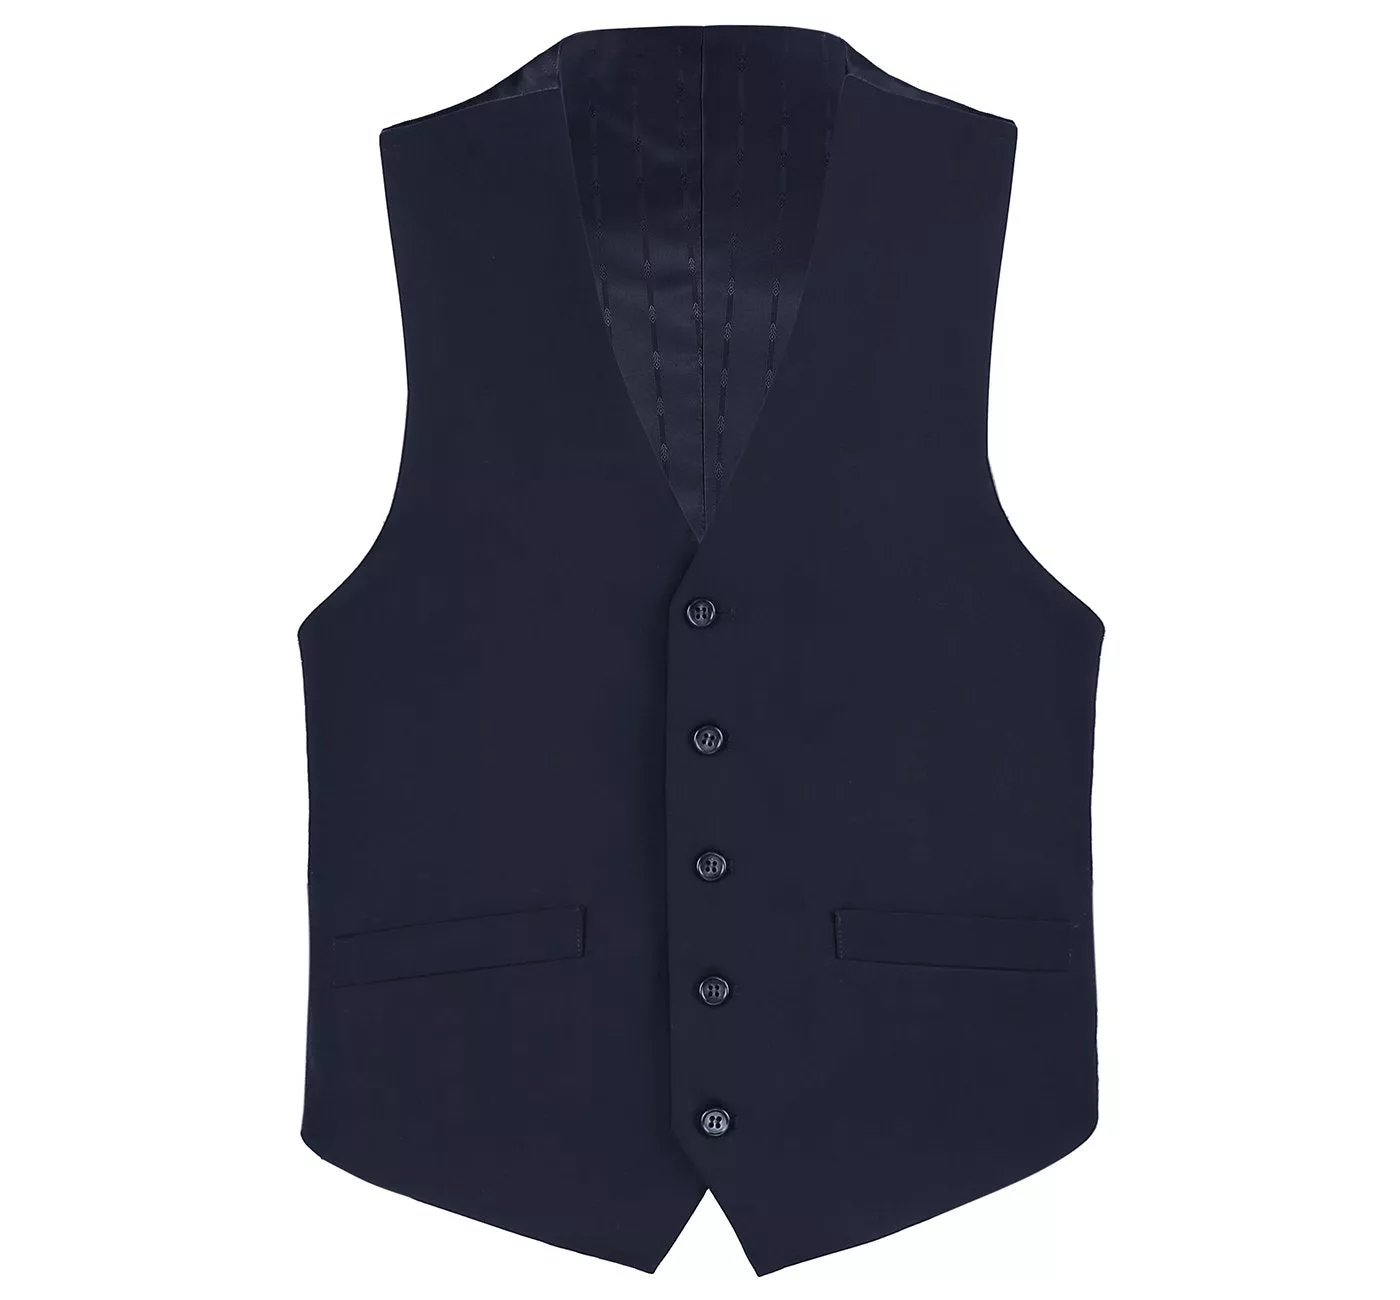 Men's Business Suit Vest Regular Fit Dress Suit Waistcoat